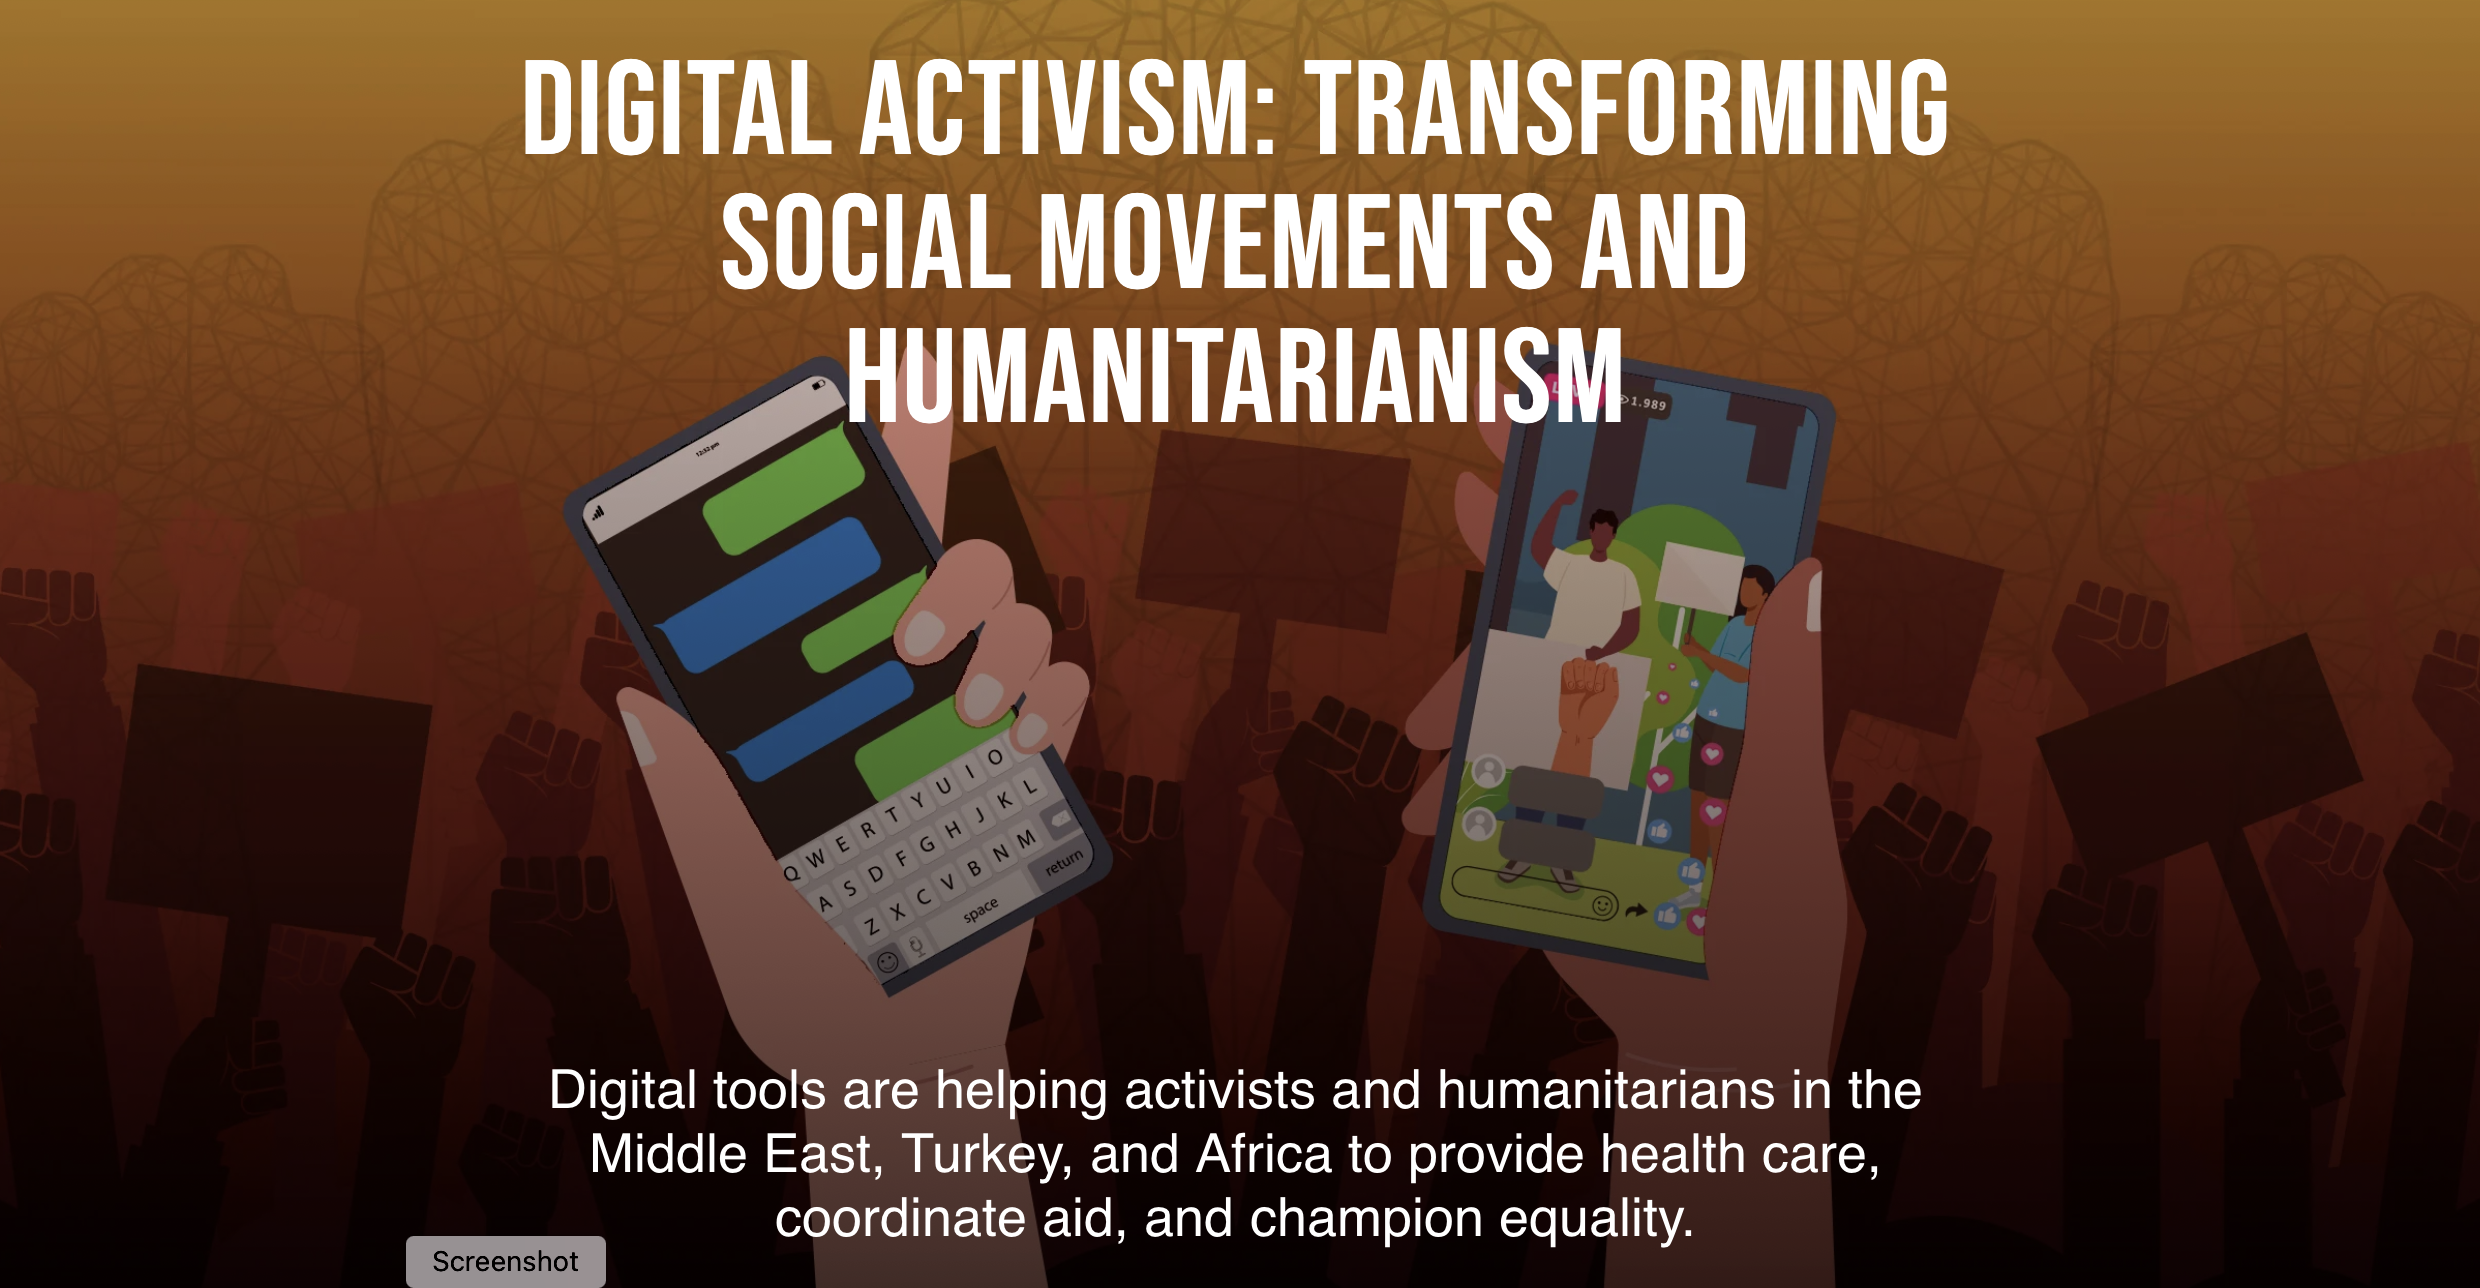 Uluslararası Kalkınma Odaklı Haber Platformu Devex, Dijital Aktivizm Haber Dosyasında İhtiyaç Haritası’na yer verdi